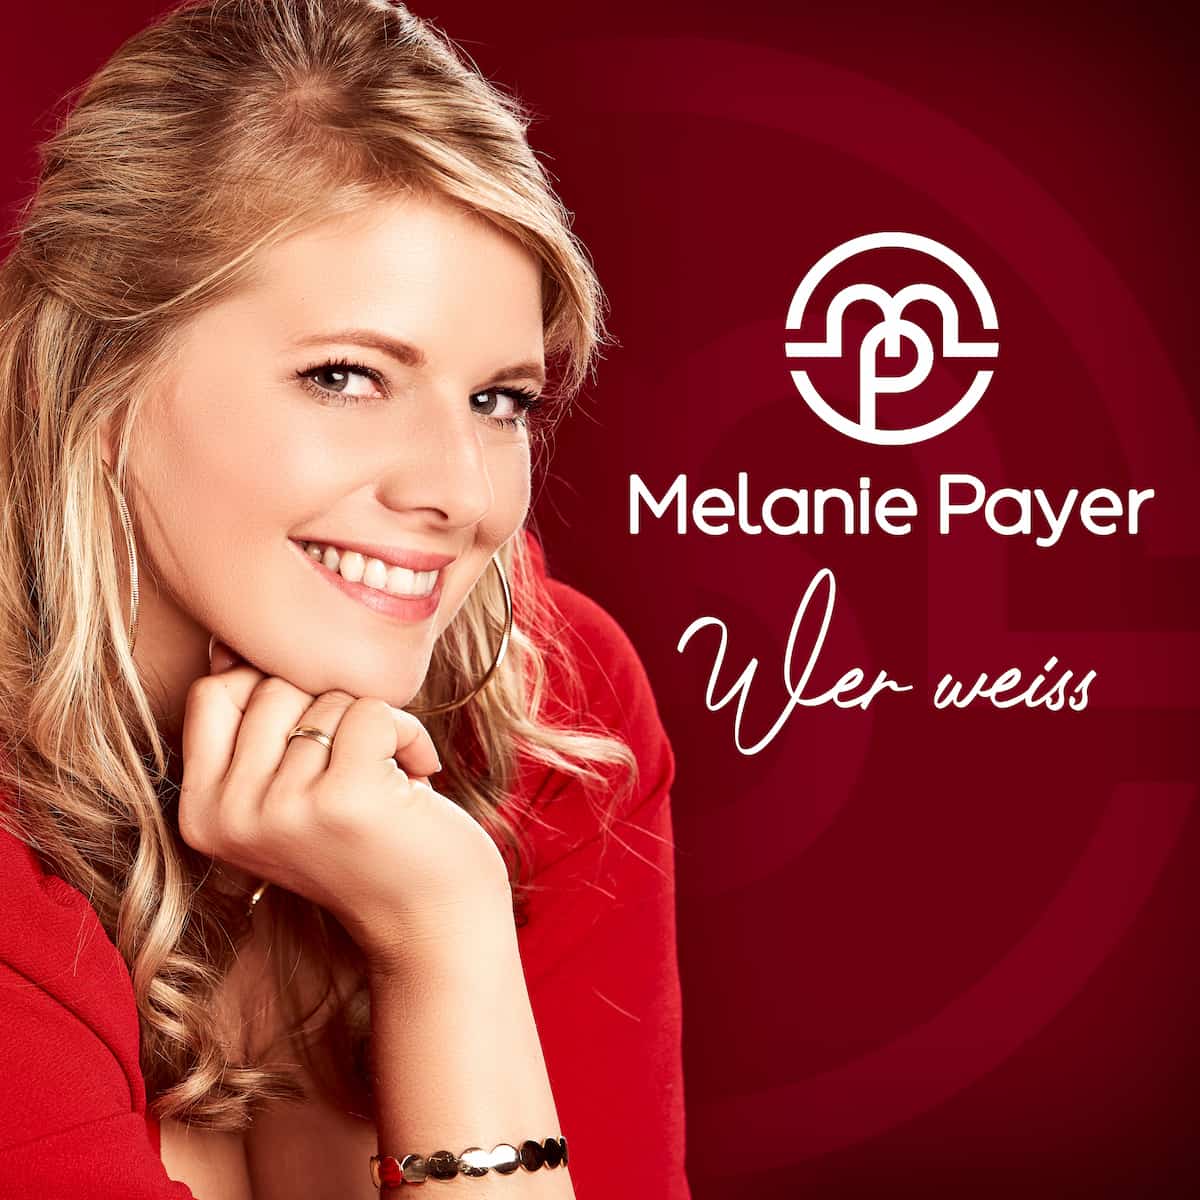 Melanie Payer mit “Wer weiß” von Null auf Platz 1 in den Salsango Schlager-Charts im April 2022